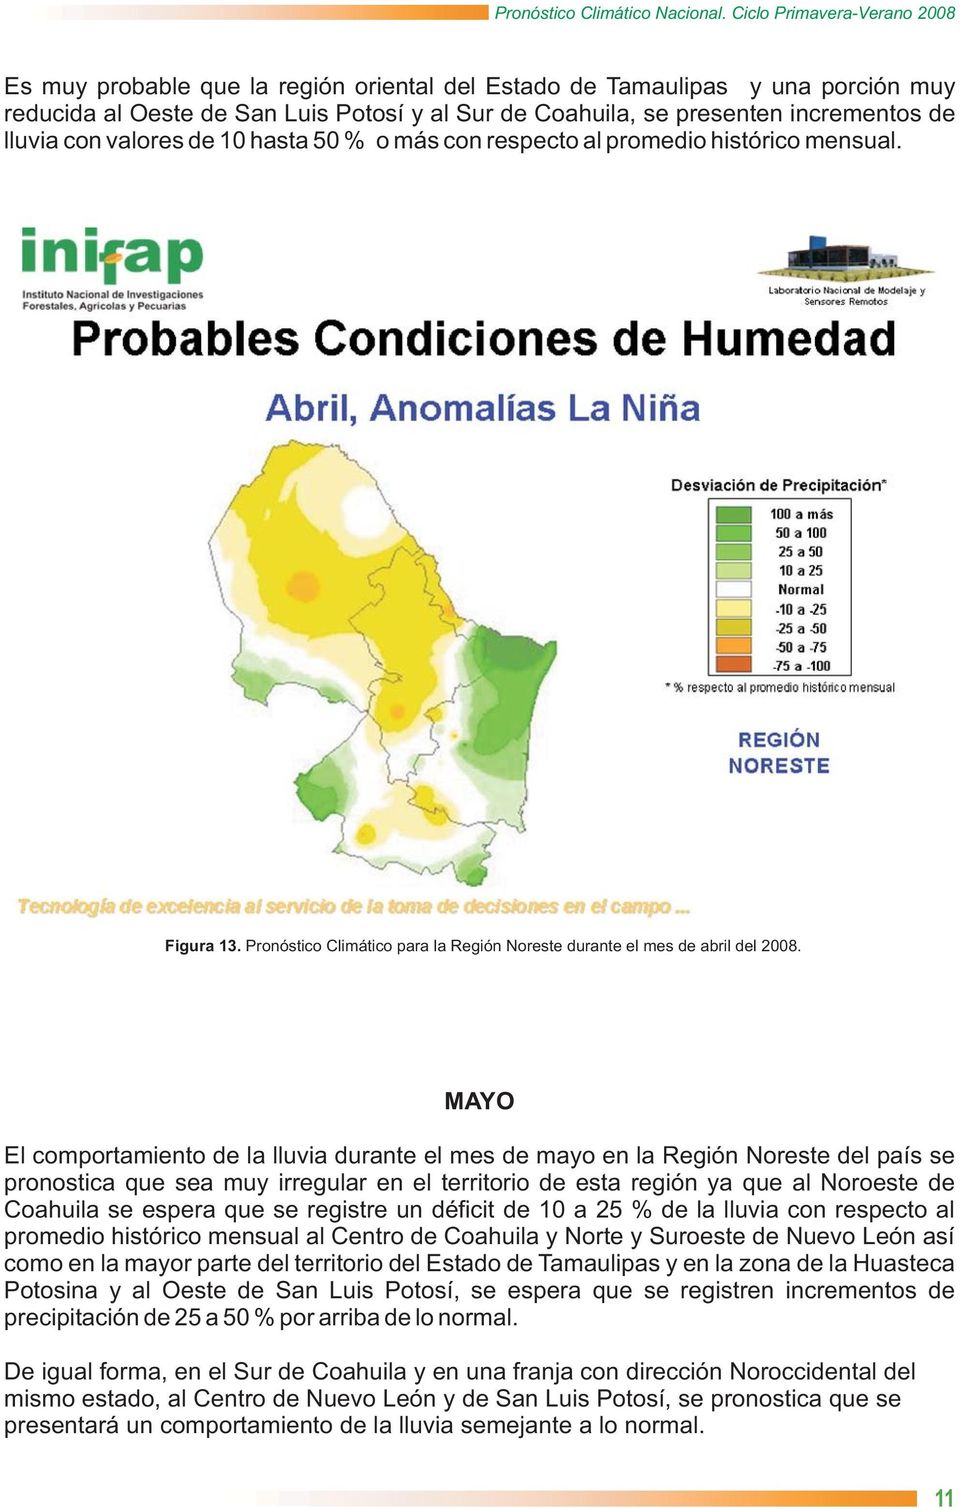 MAYO El comportamiento de la lluvia durante el mes de mayo en la Región Noreste del país se pronostica que sea muy irregular en el territorio de esta región ya que al Noroeste de Coahuila se espera